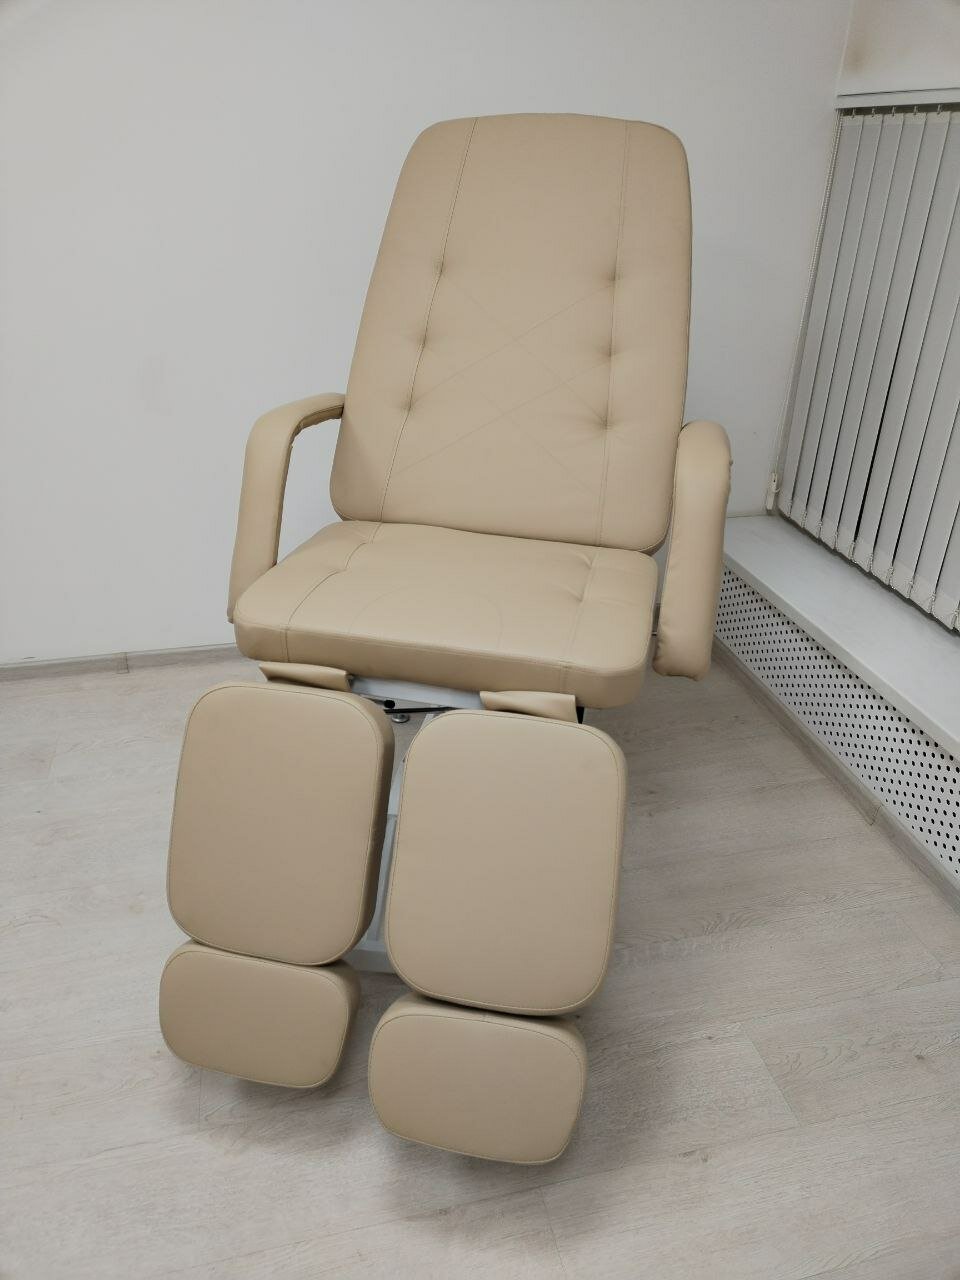 Педикюрное кресло на гидравлике "Омега" обивка стандарт бежевый